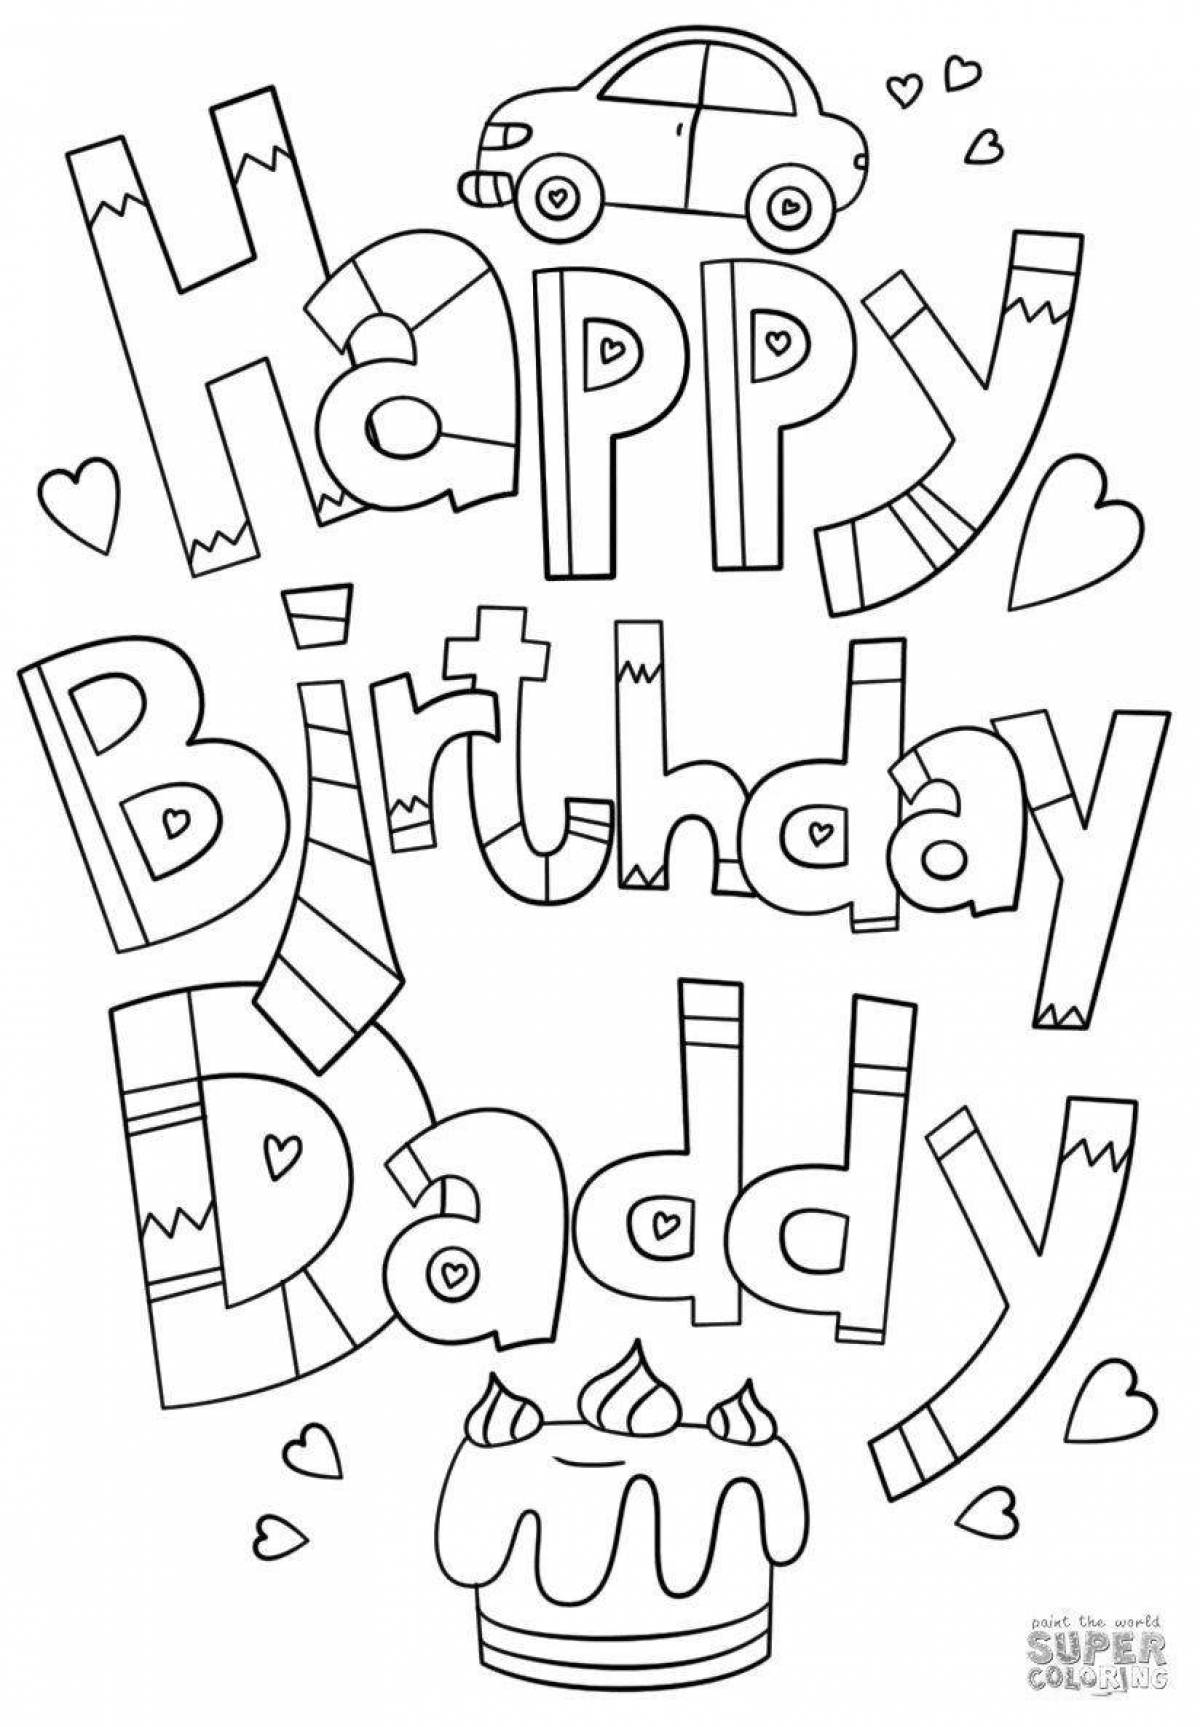 Daddy birthday from daughter #1